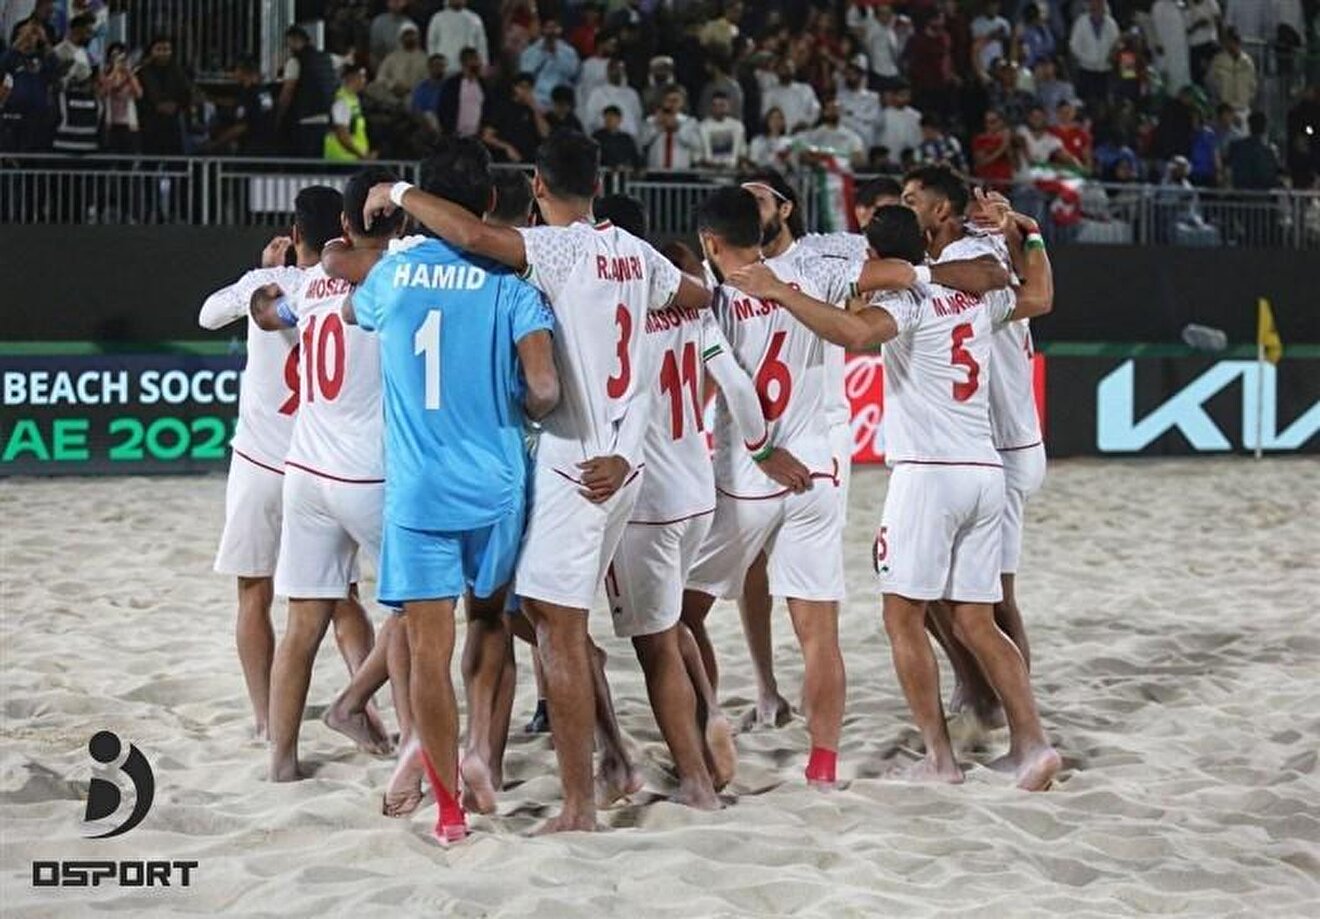 جام جهانی فوتبال ساحلی| دومین سومی ایران با ۶ تایی کردن بلاروس + عکس